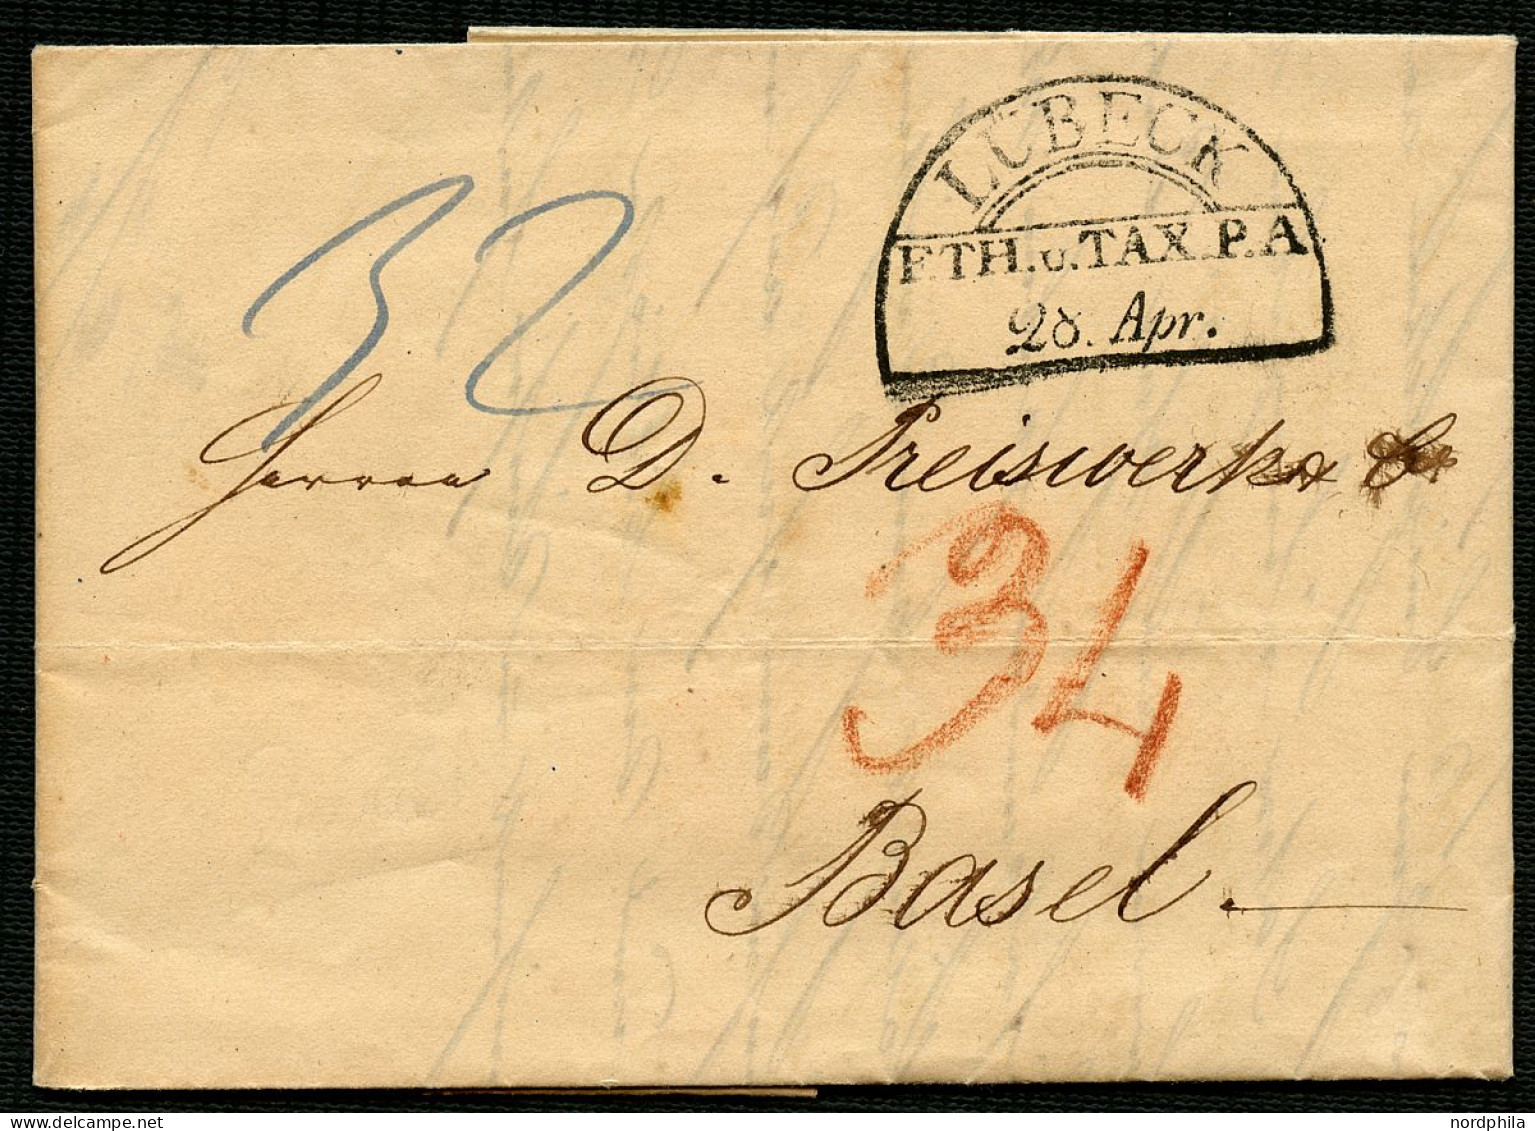 THURN Und TAXIS 1843, Halbkreisstempel LÜBECK F.TH. U. TAX. P.A., Roter Taxvermerk 34 Und Blauer Taxvermerk 32, Roter An - Vorphilatelie